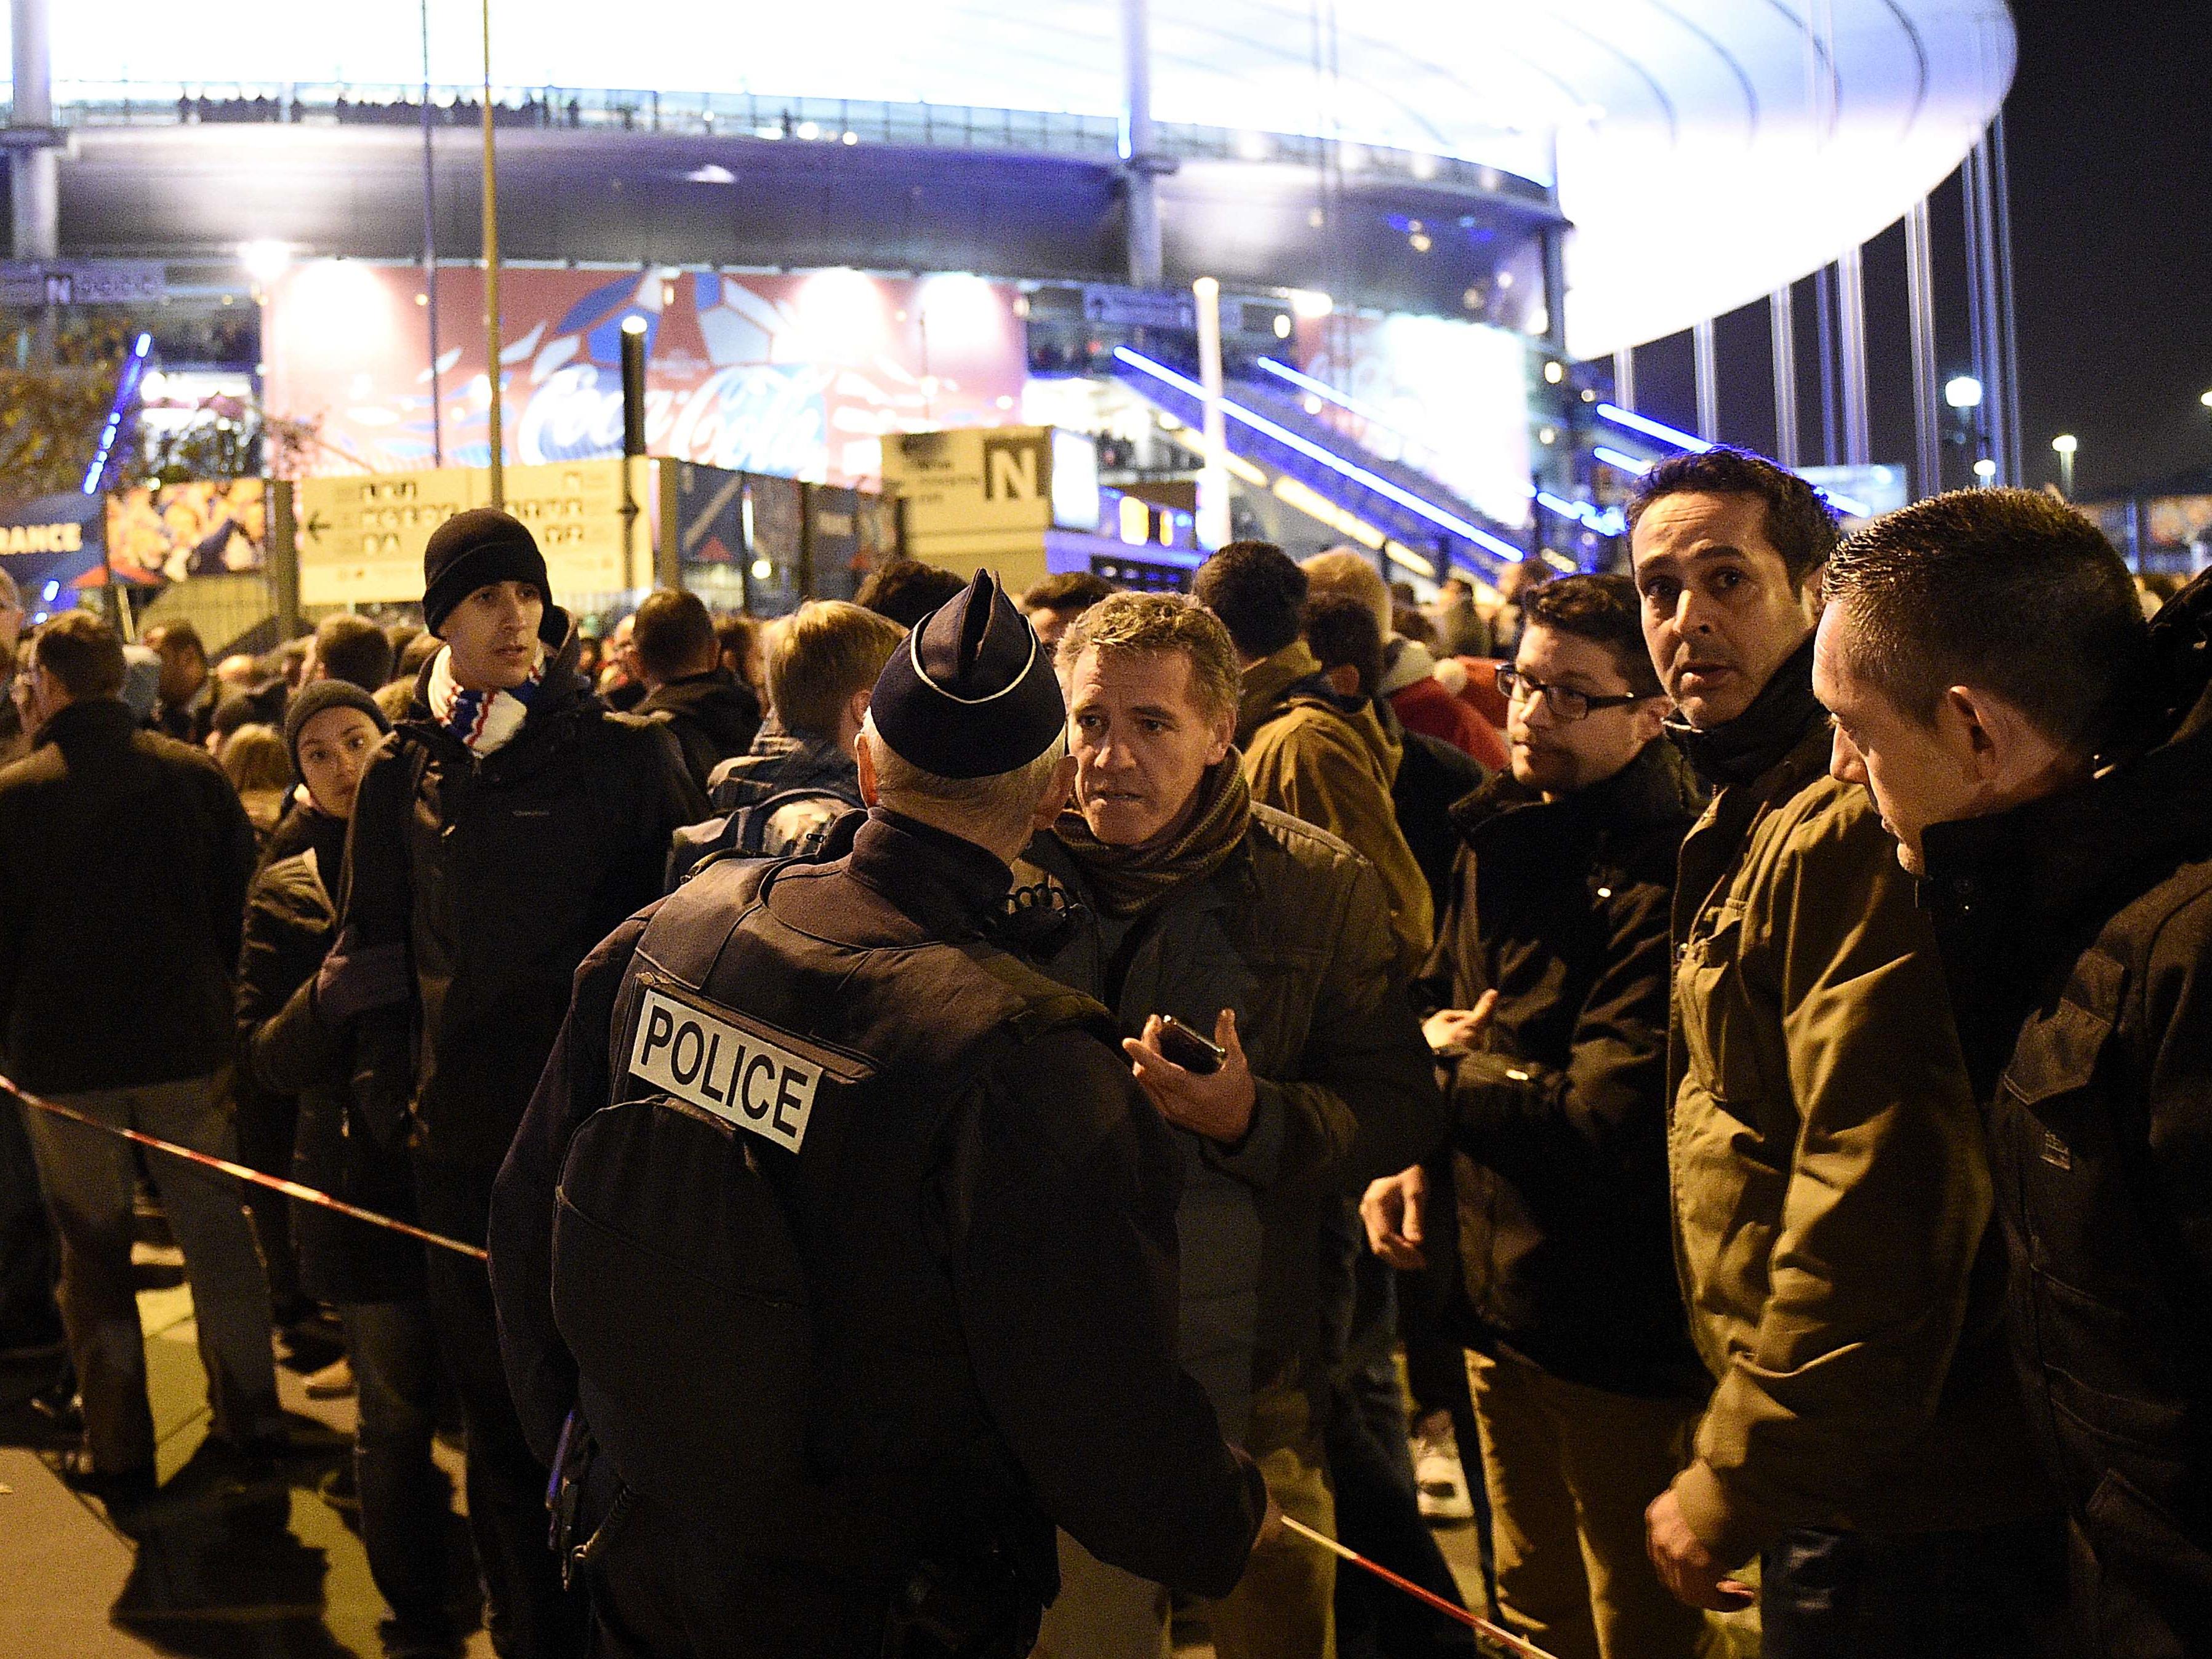 Am Freitag gab es zwei Explosionen unweit des Stade de France in Paris.